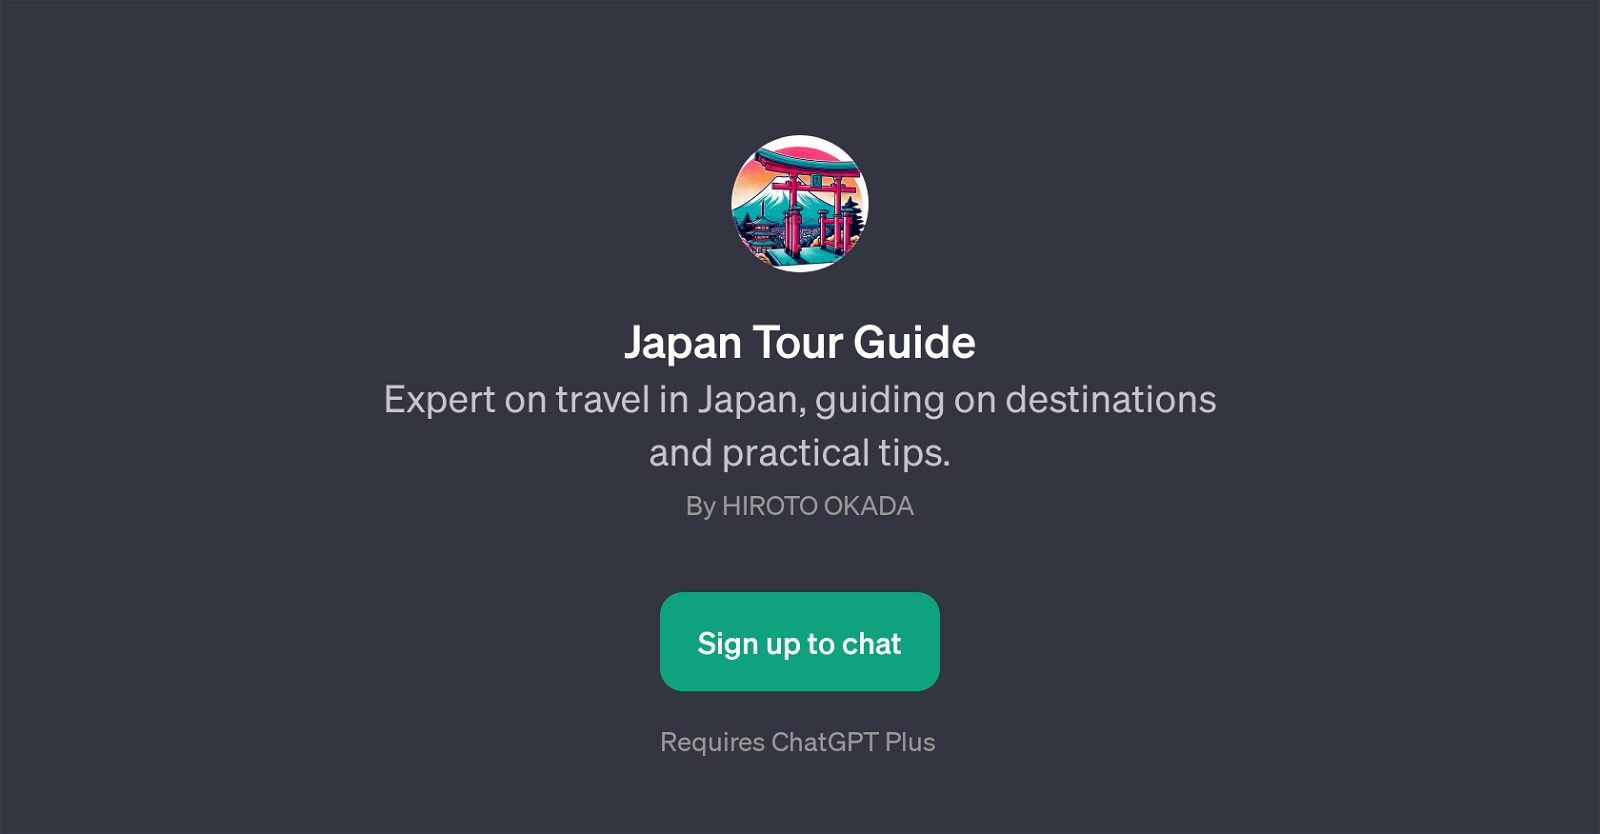 Japan Tour Guide website